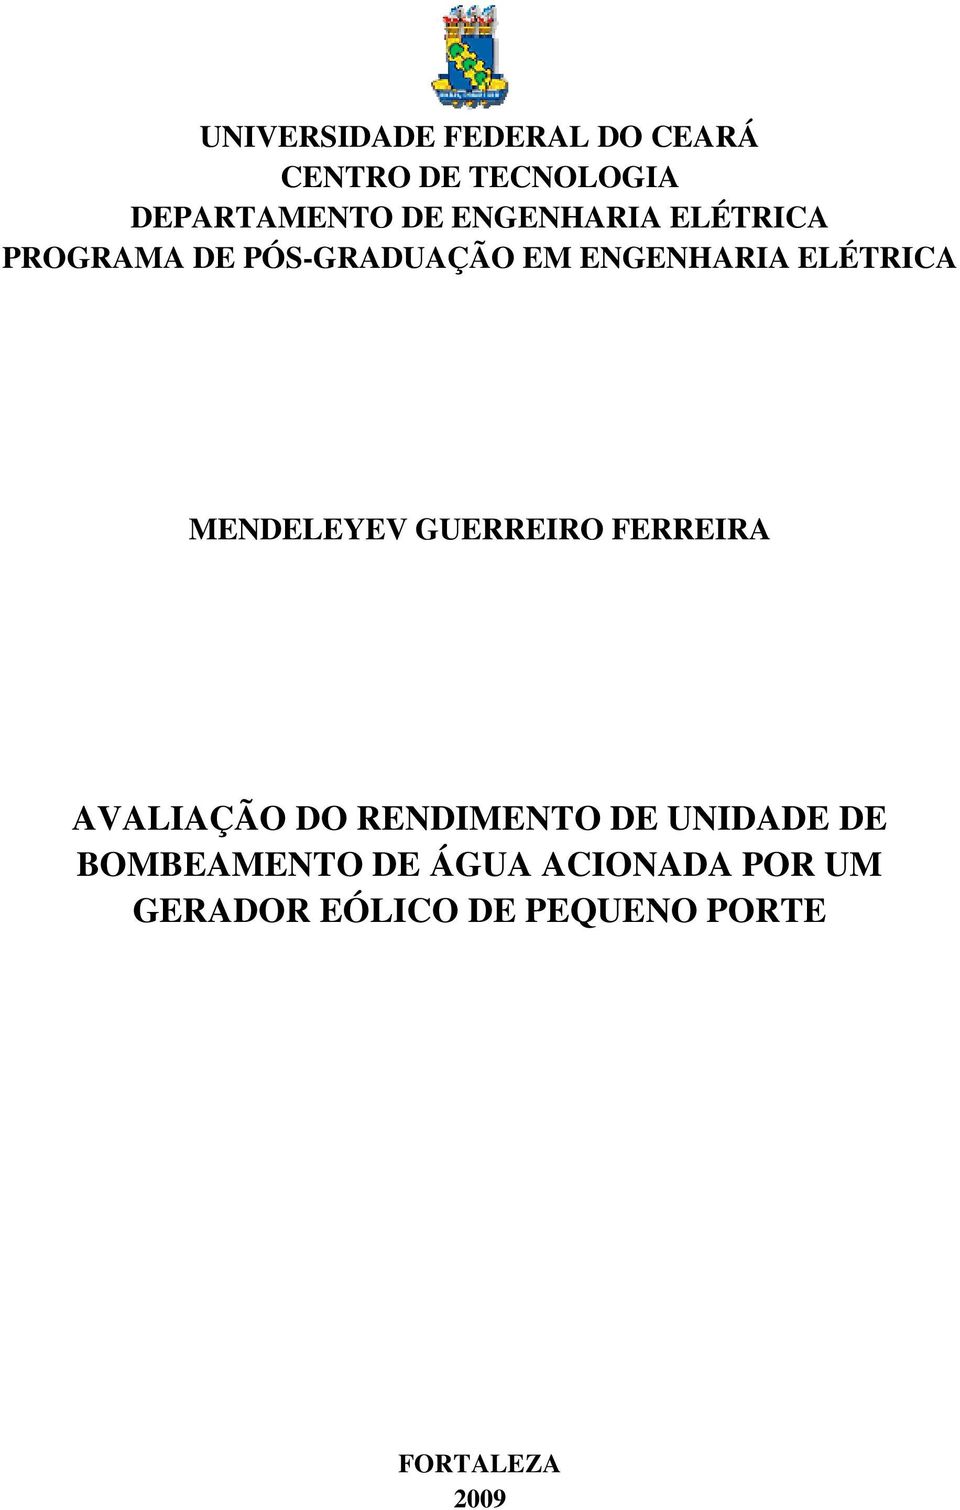 MENDELEYEV GUERREIRO FERREIRA AVALIAÇÃO DO RENDIMENTO DE UNIDADE DE